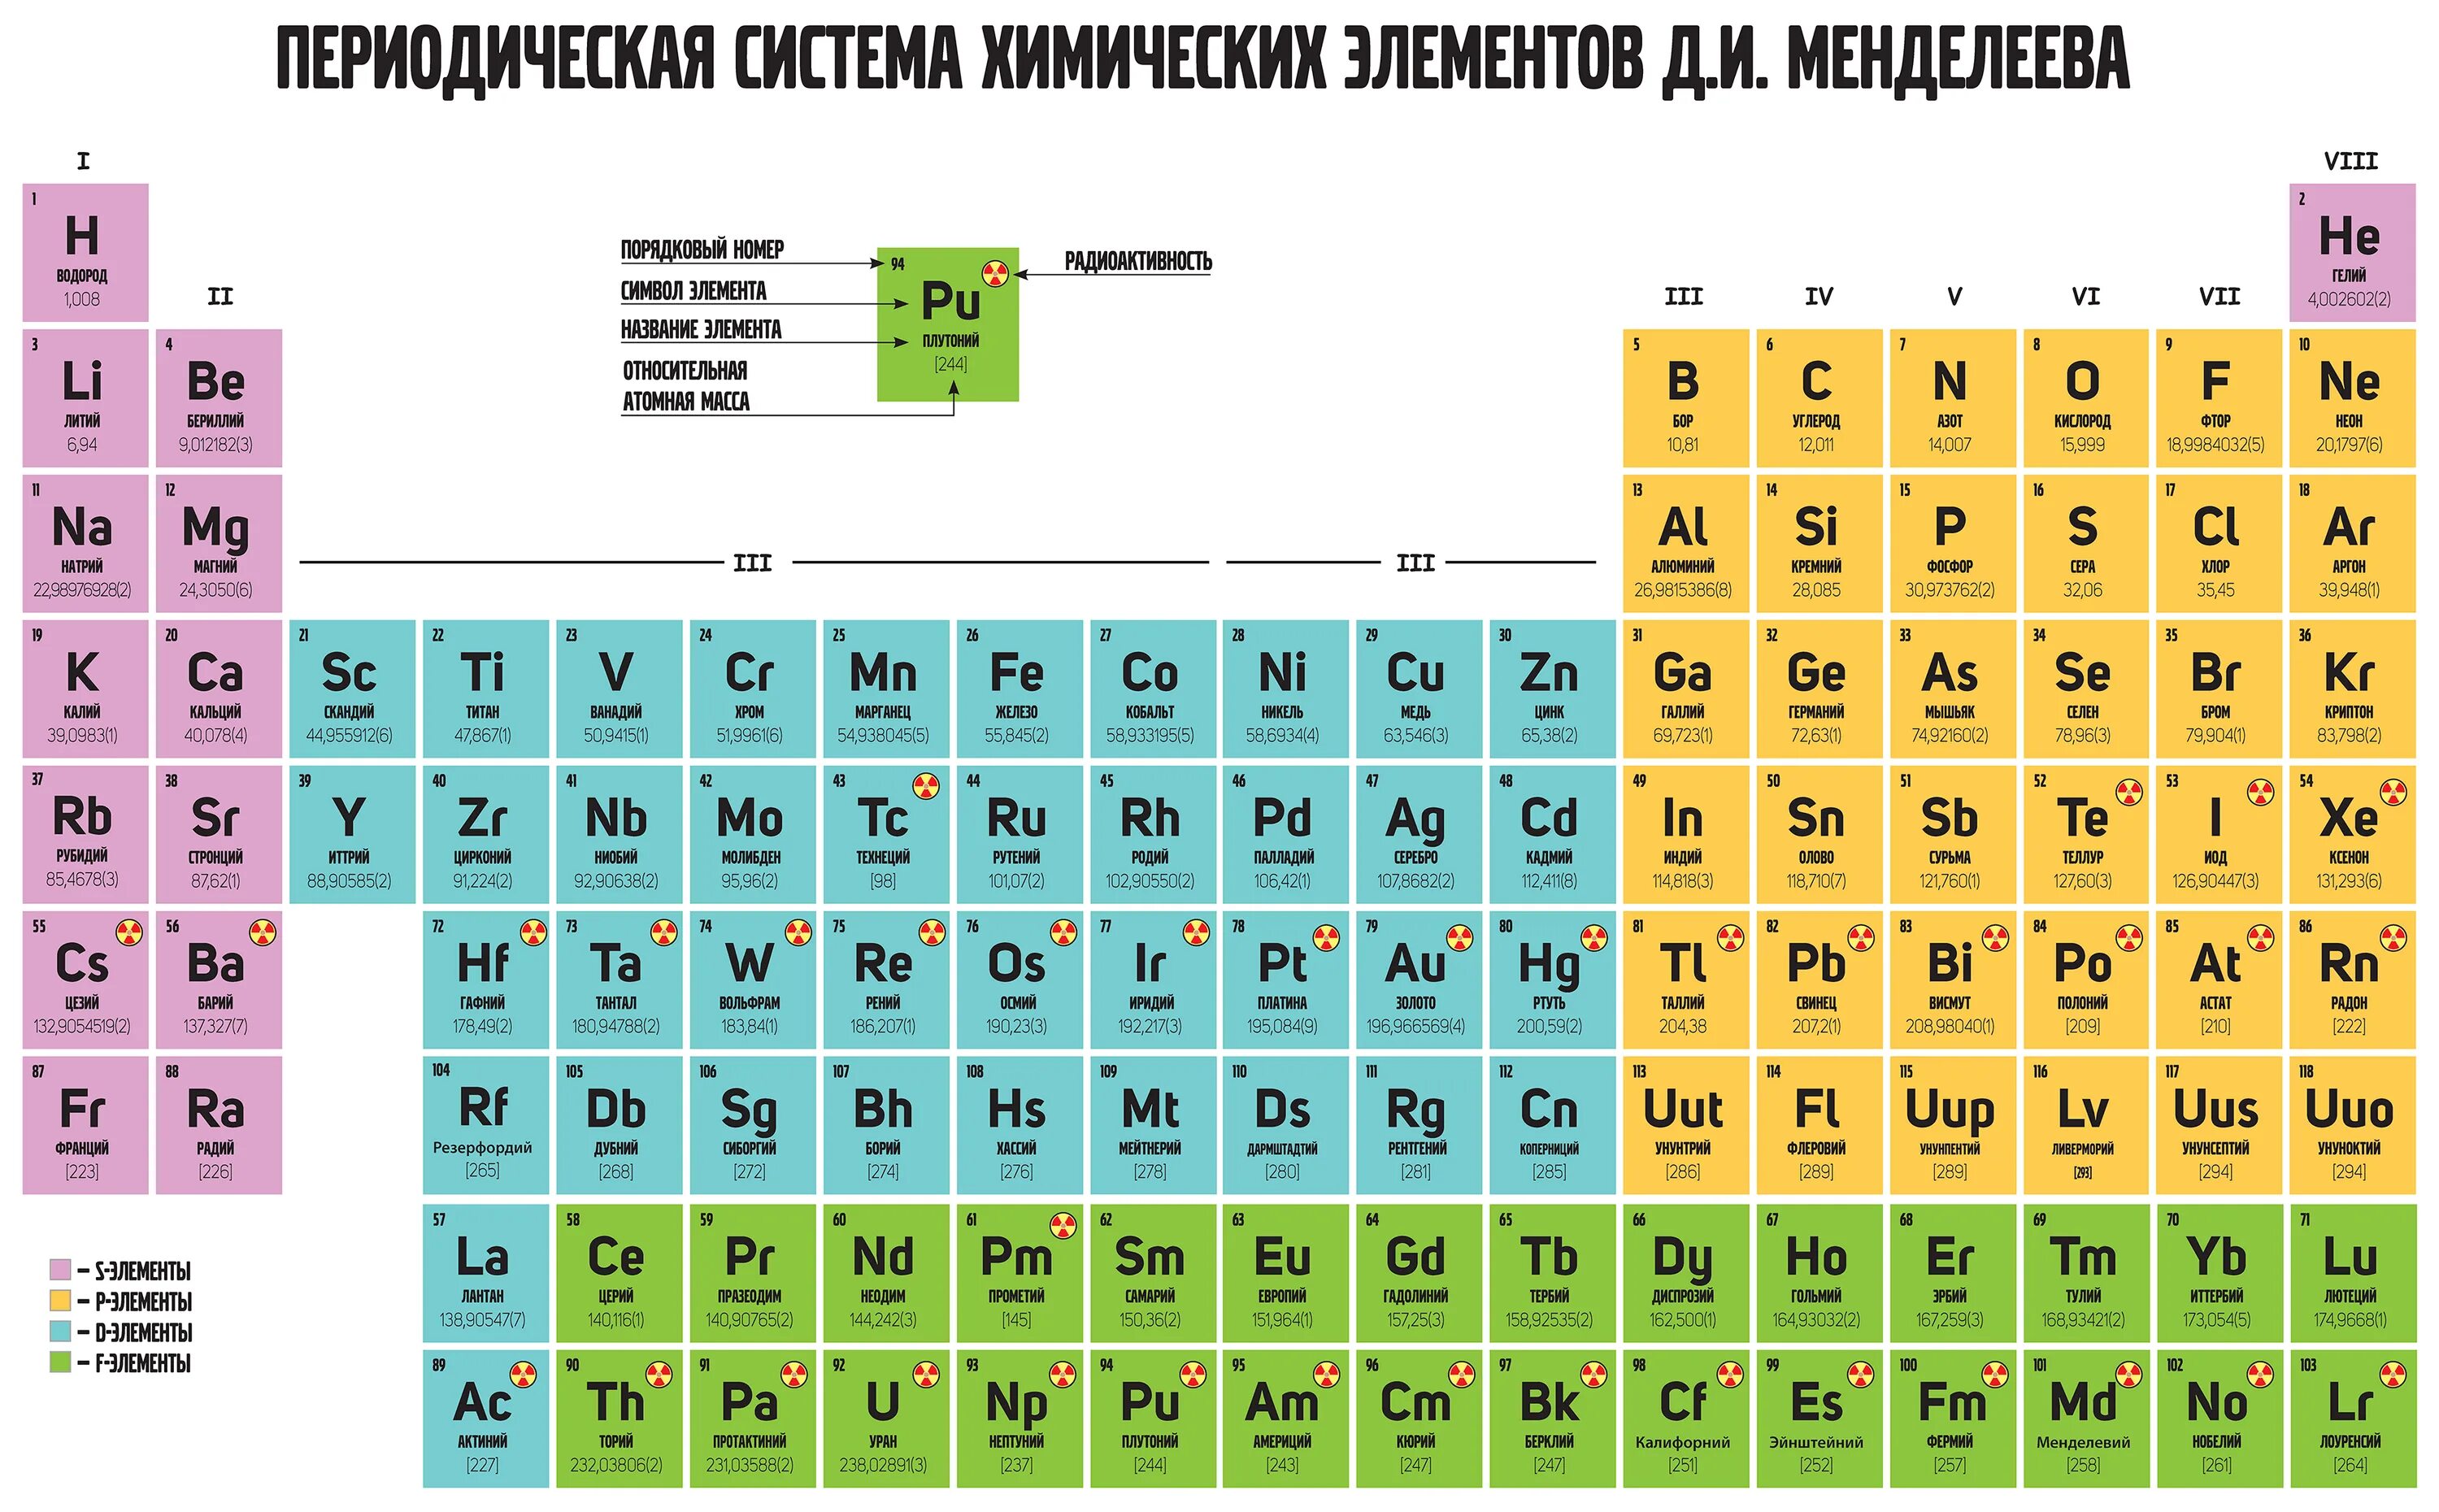 Первая р вторая е четвертая а. Периодическая таблица химических элементов. Периодическая система химических элементов Менделеева 118 элементов. Таблица Менделеева s p d f элементы. Таблица Менделеева 126 элементов.